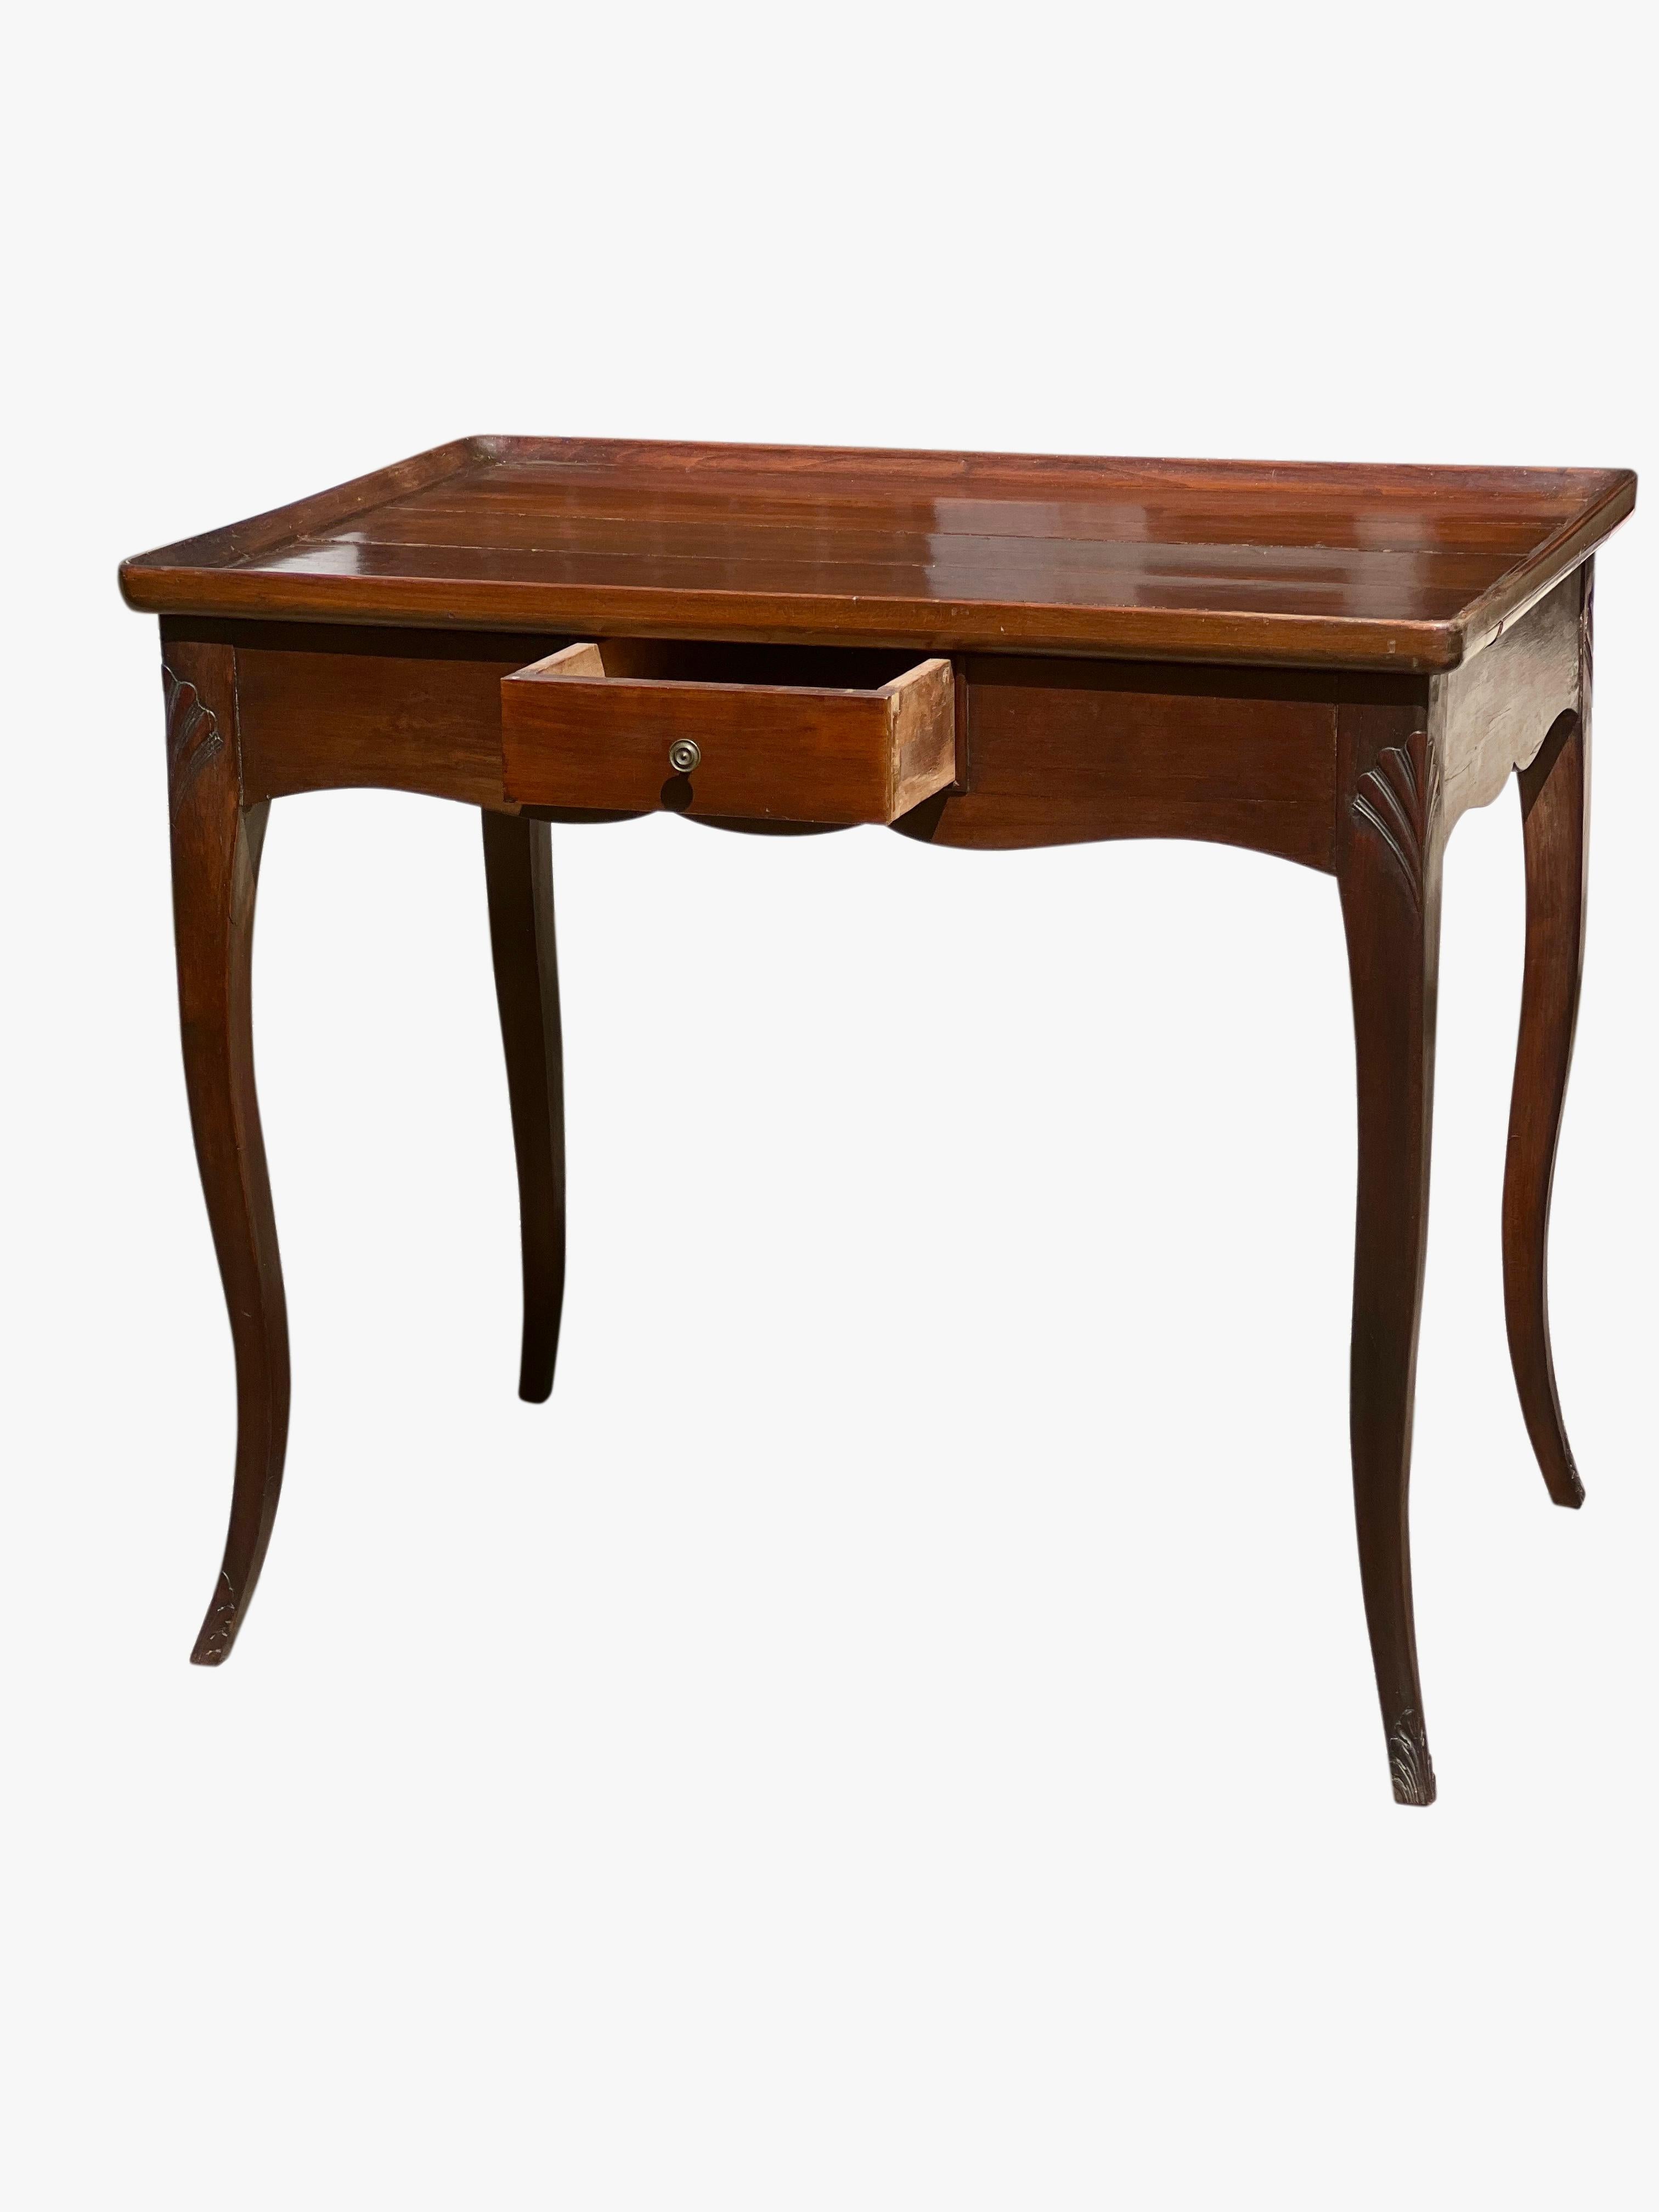 Ancienne table d'appoint en acajou de style Louis XV de style provincial français  table à thé, vers 1900.

Cette belle table a fait l'objet d'un entretien méticuleux et présente une belle patine avec un magnifique éclat satiné. Les pieds cabriole